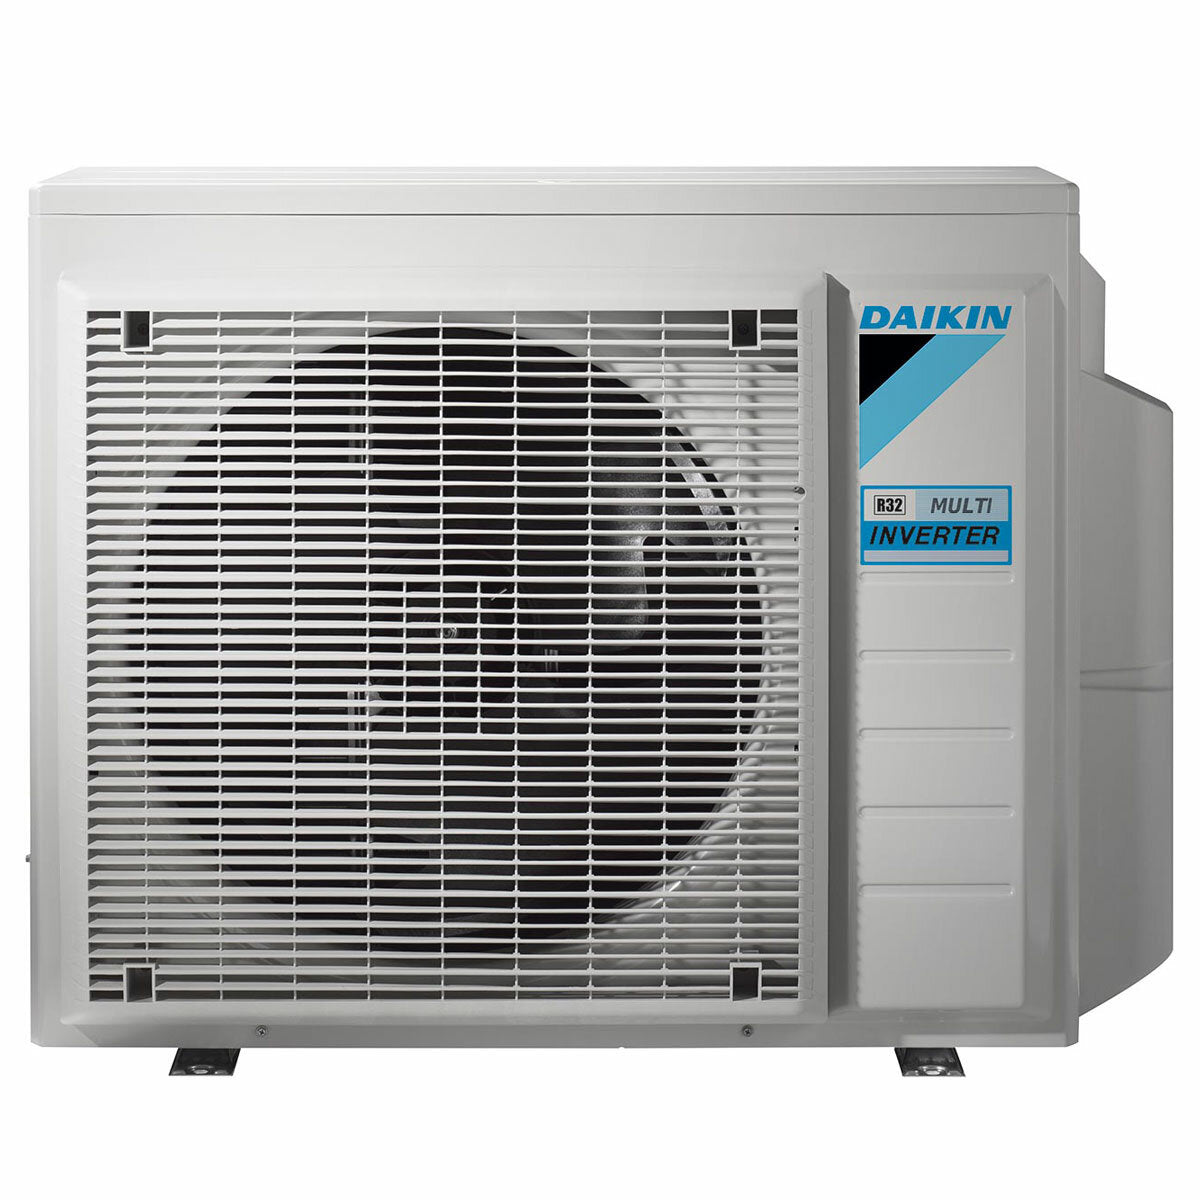 Daikin Emura 3 air conditioner penta split 9000+9000+9000+12000+12000 BTU inverter A++ wifi outdoor unit 7.8 kW White